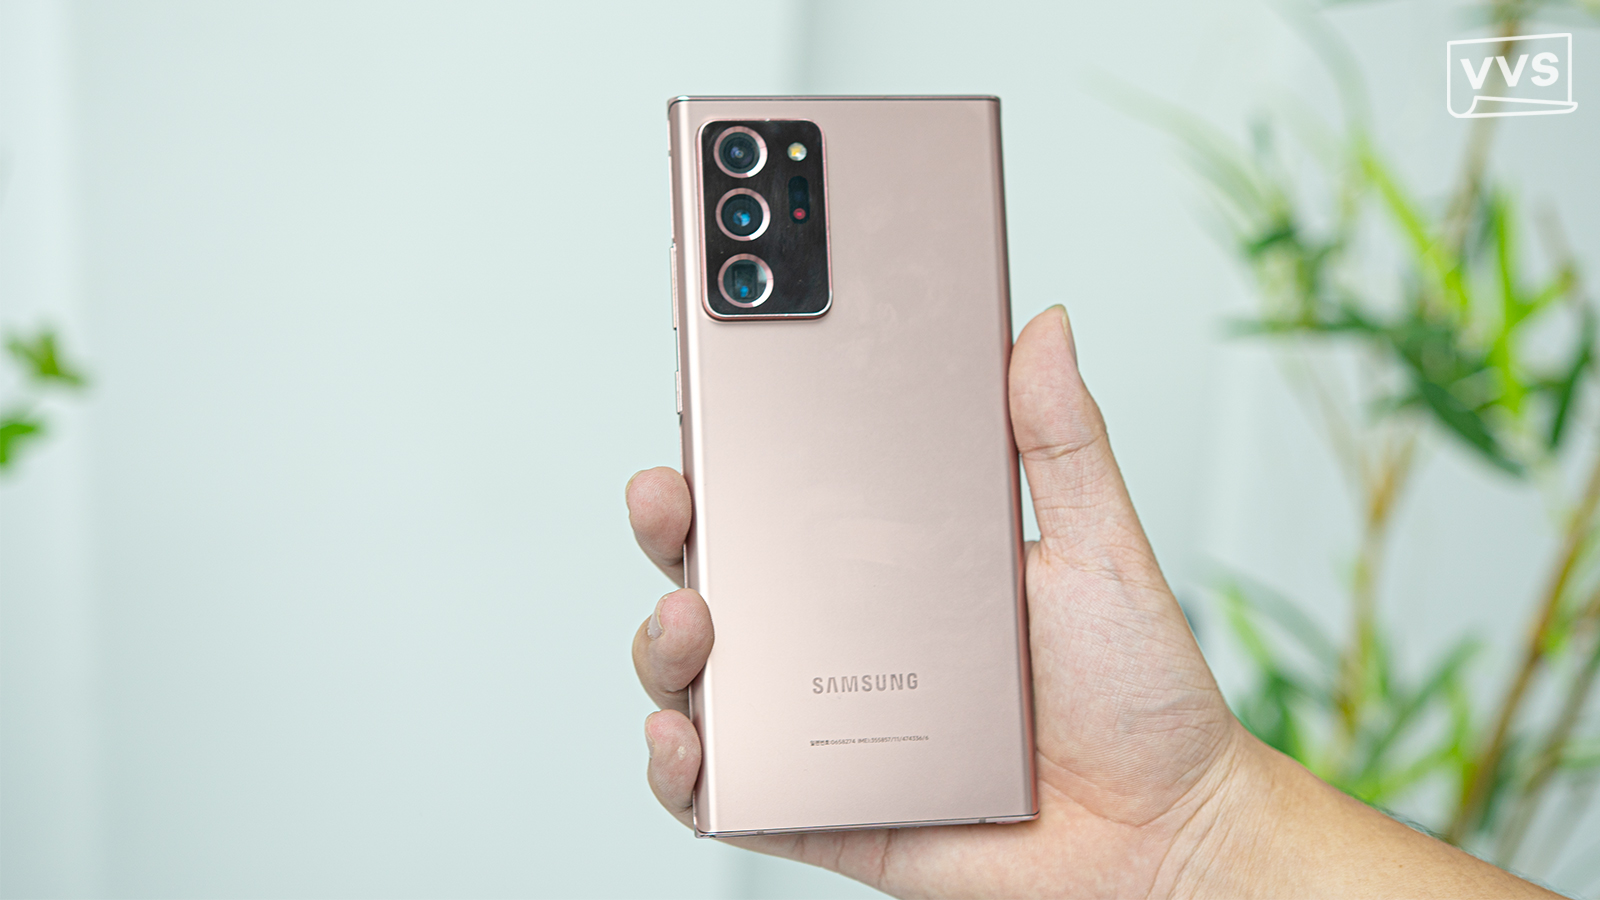 Giá của Galaxy Note 20 Ultra đã trở nên rất hấp dẫn vào năm 2024, đặc biệt đối với những ai yêu thích công nghệ và tìm kiếm sự tiện dụng trong mọi hoạt động hàng ngày. Với mức giá rẻ hơn, bạn sẽ có thể trải nghiệm trọn vẹn các tính năng vượt trội của chiếc điện thoại này mà không ảnh hưởng đến ngân sách của mình.